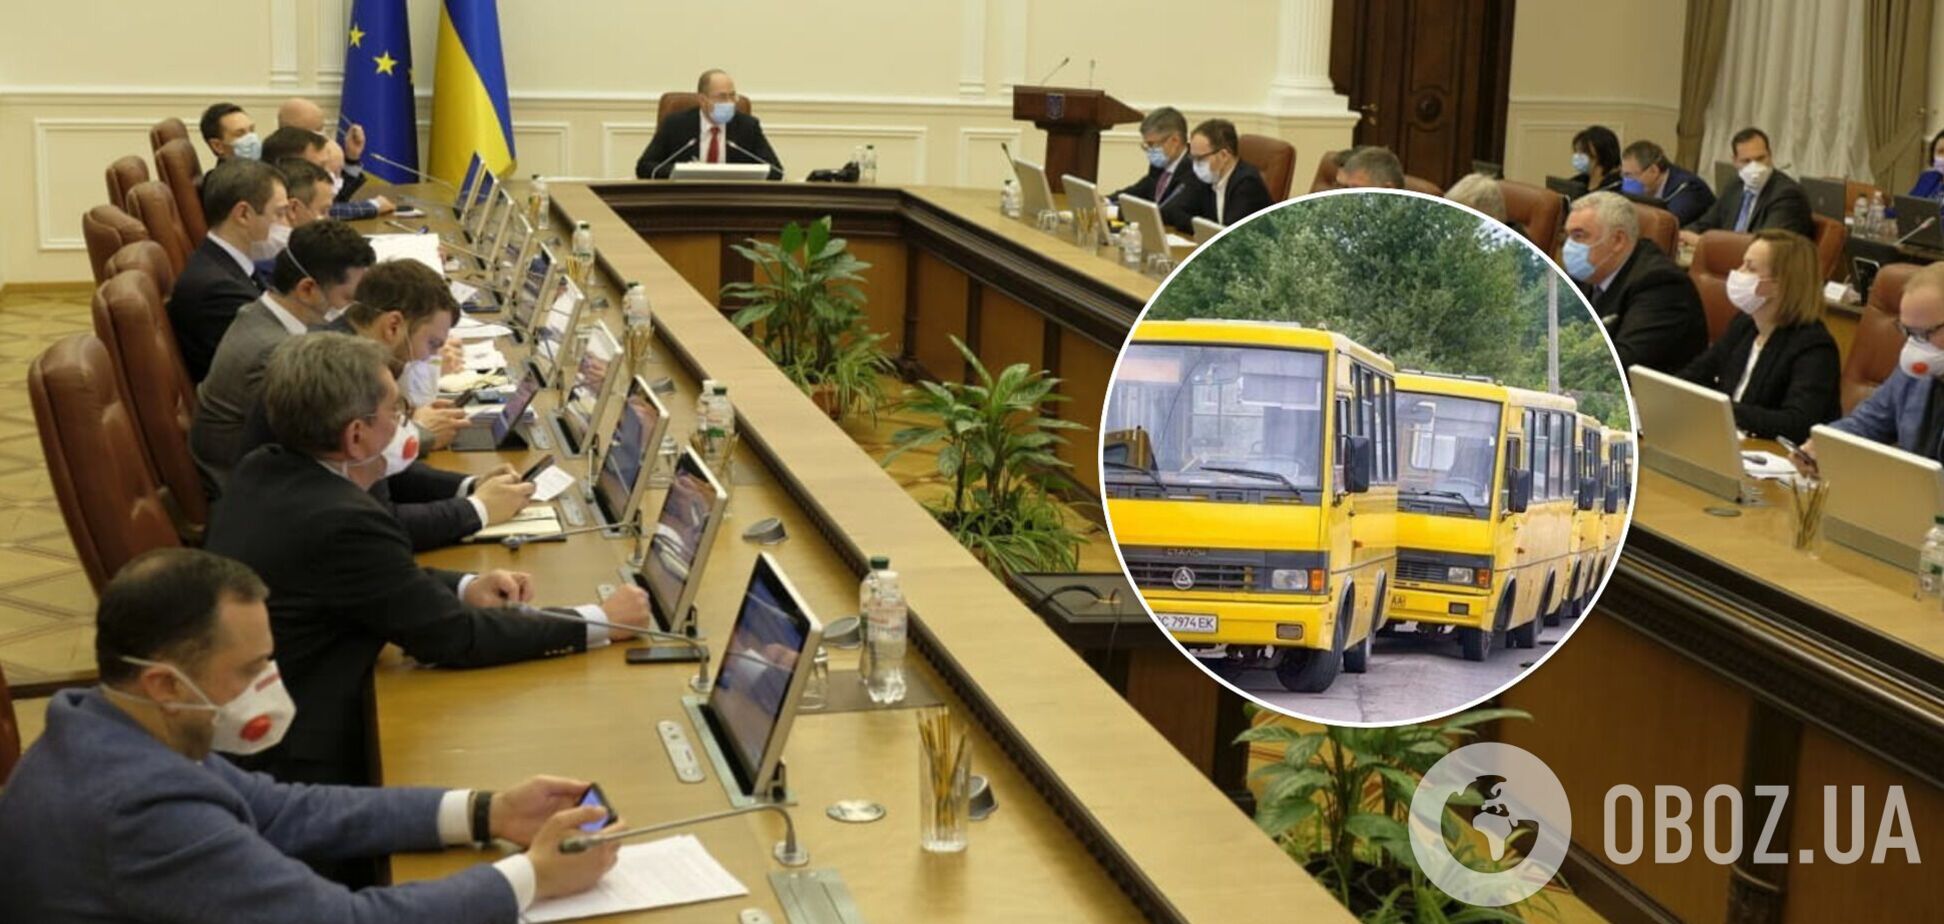 Кабмин изменит правила пассажирских перевозок в маршрутках после ДТП под Черниговом, – Шмыгаль